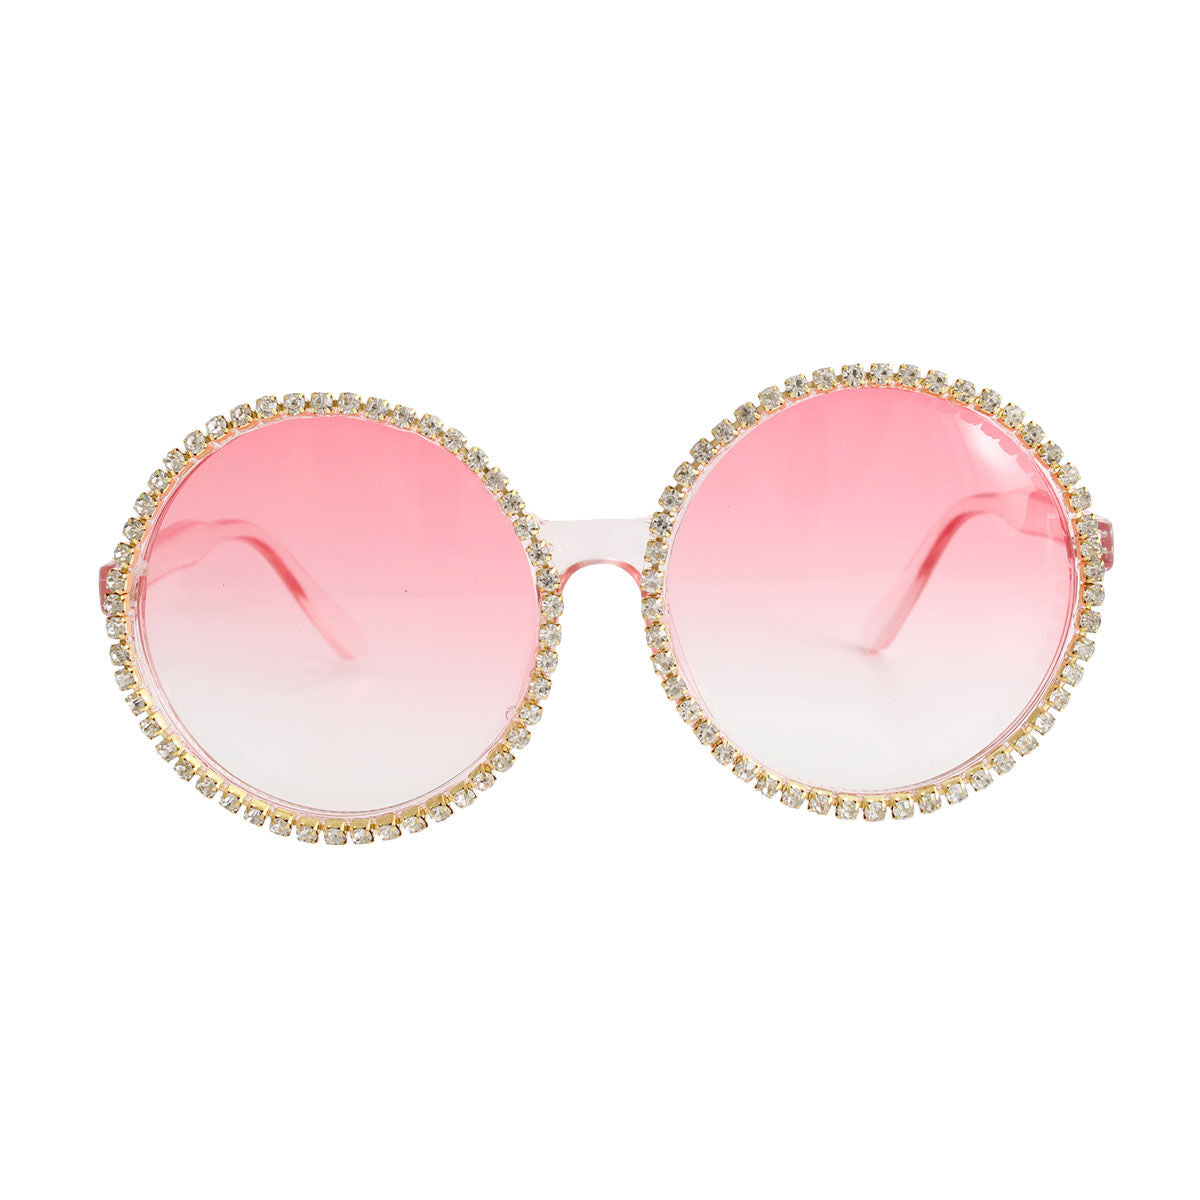 Pink Round Stone Sunglasses